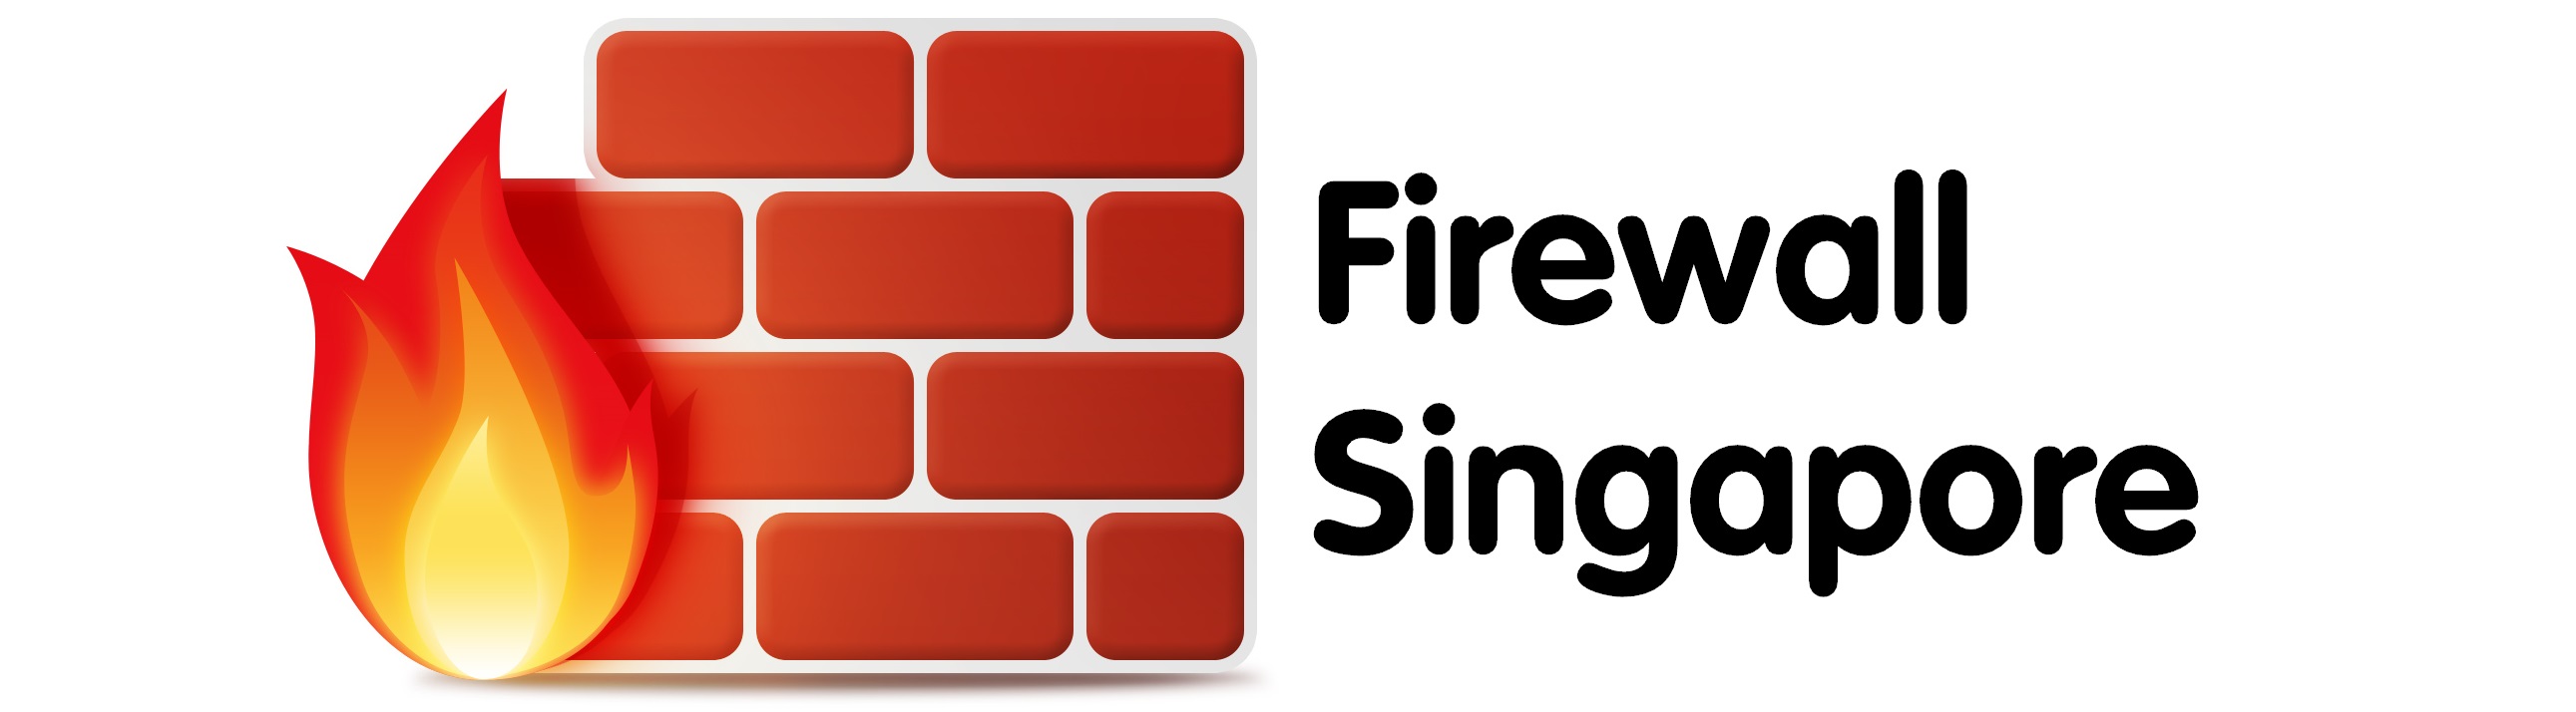 Firewall Singapore